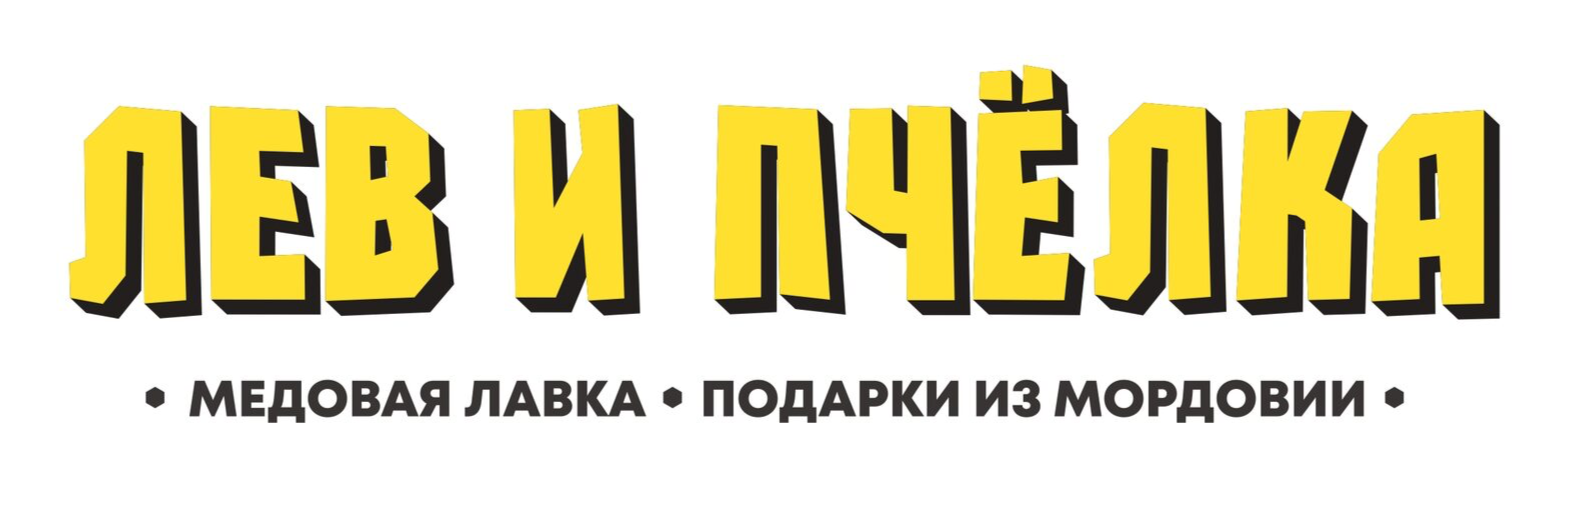 ЛЕВ и ПЧЕЛКА логотип